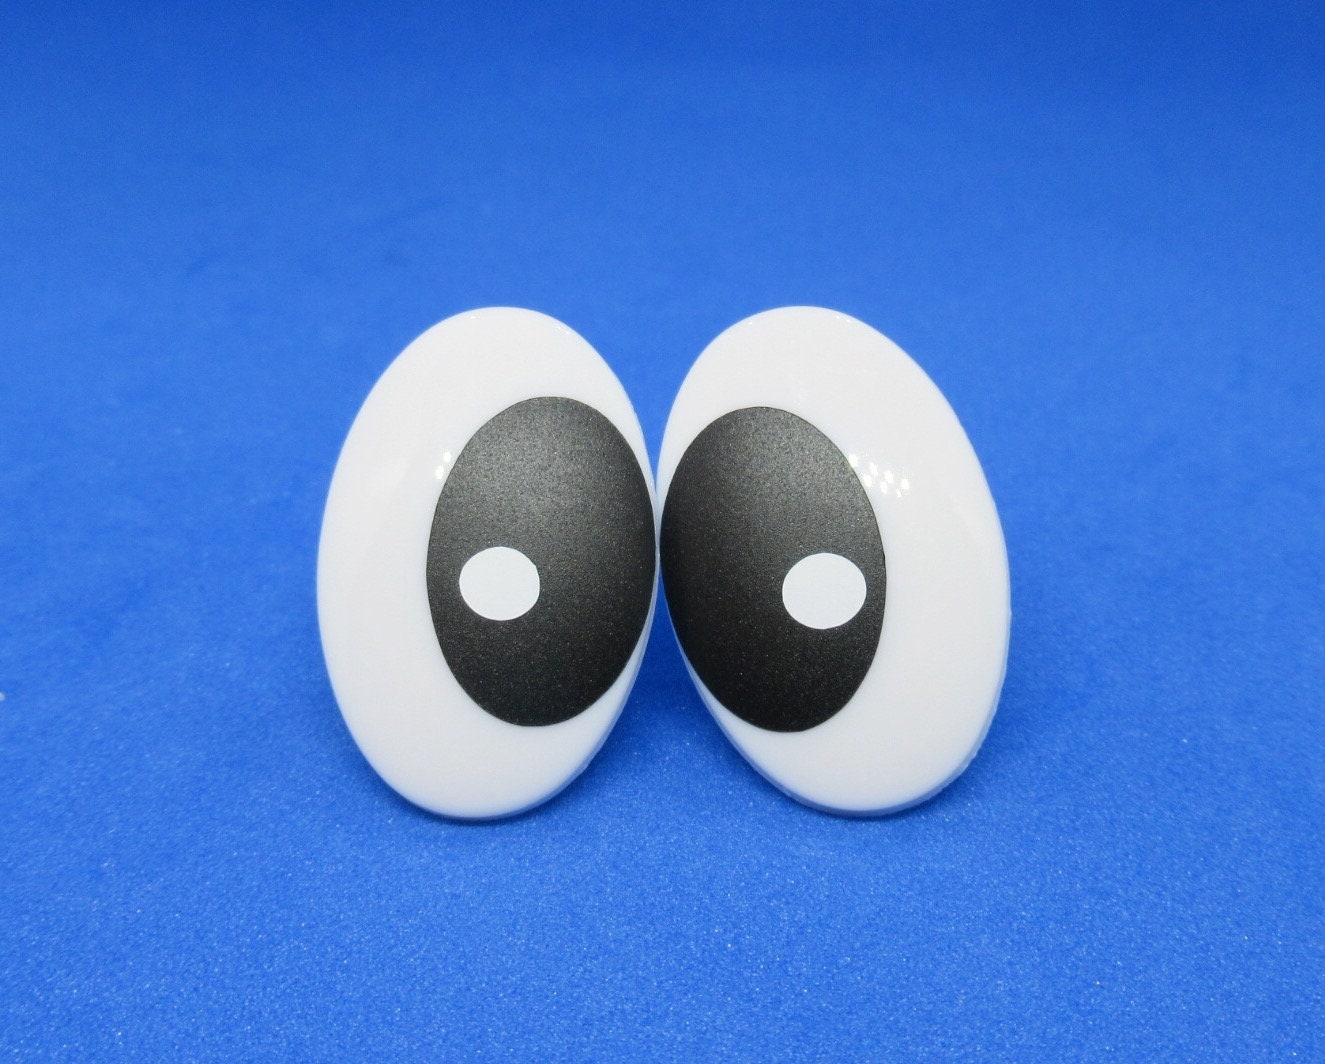 3.5mmx2.5mm Black Oval Safety Eyes/Plastic Eyes - 30 Pairs